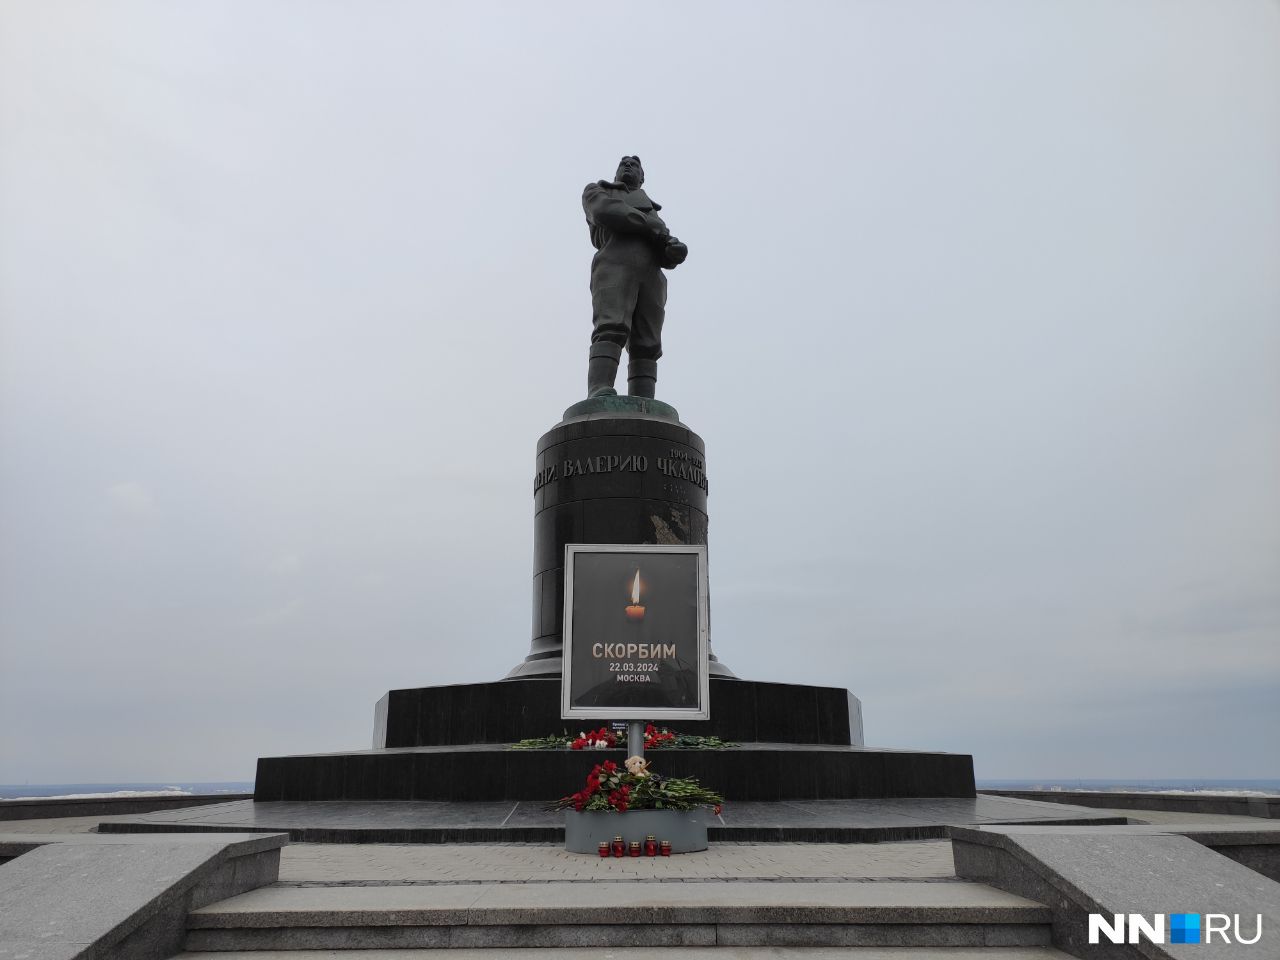 Кадры с места стихийного мемориала в Нижнем Новгороде. Его создали в память о жертвах теракта в Москве